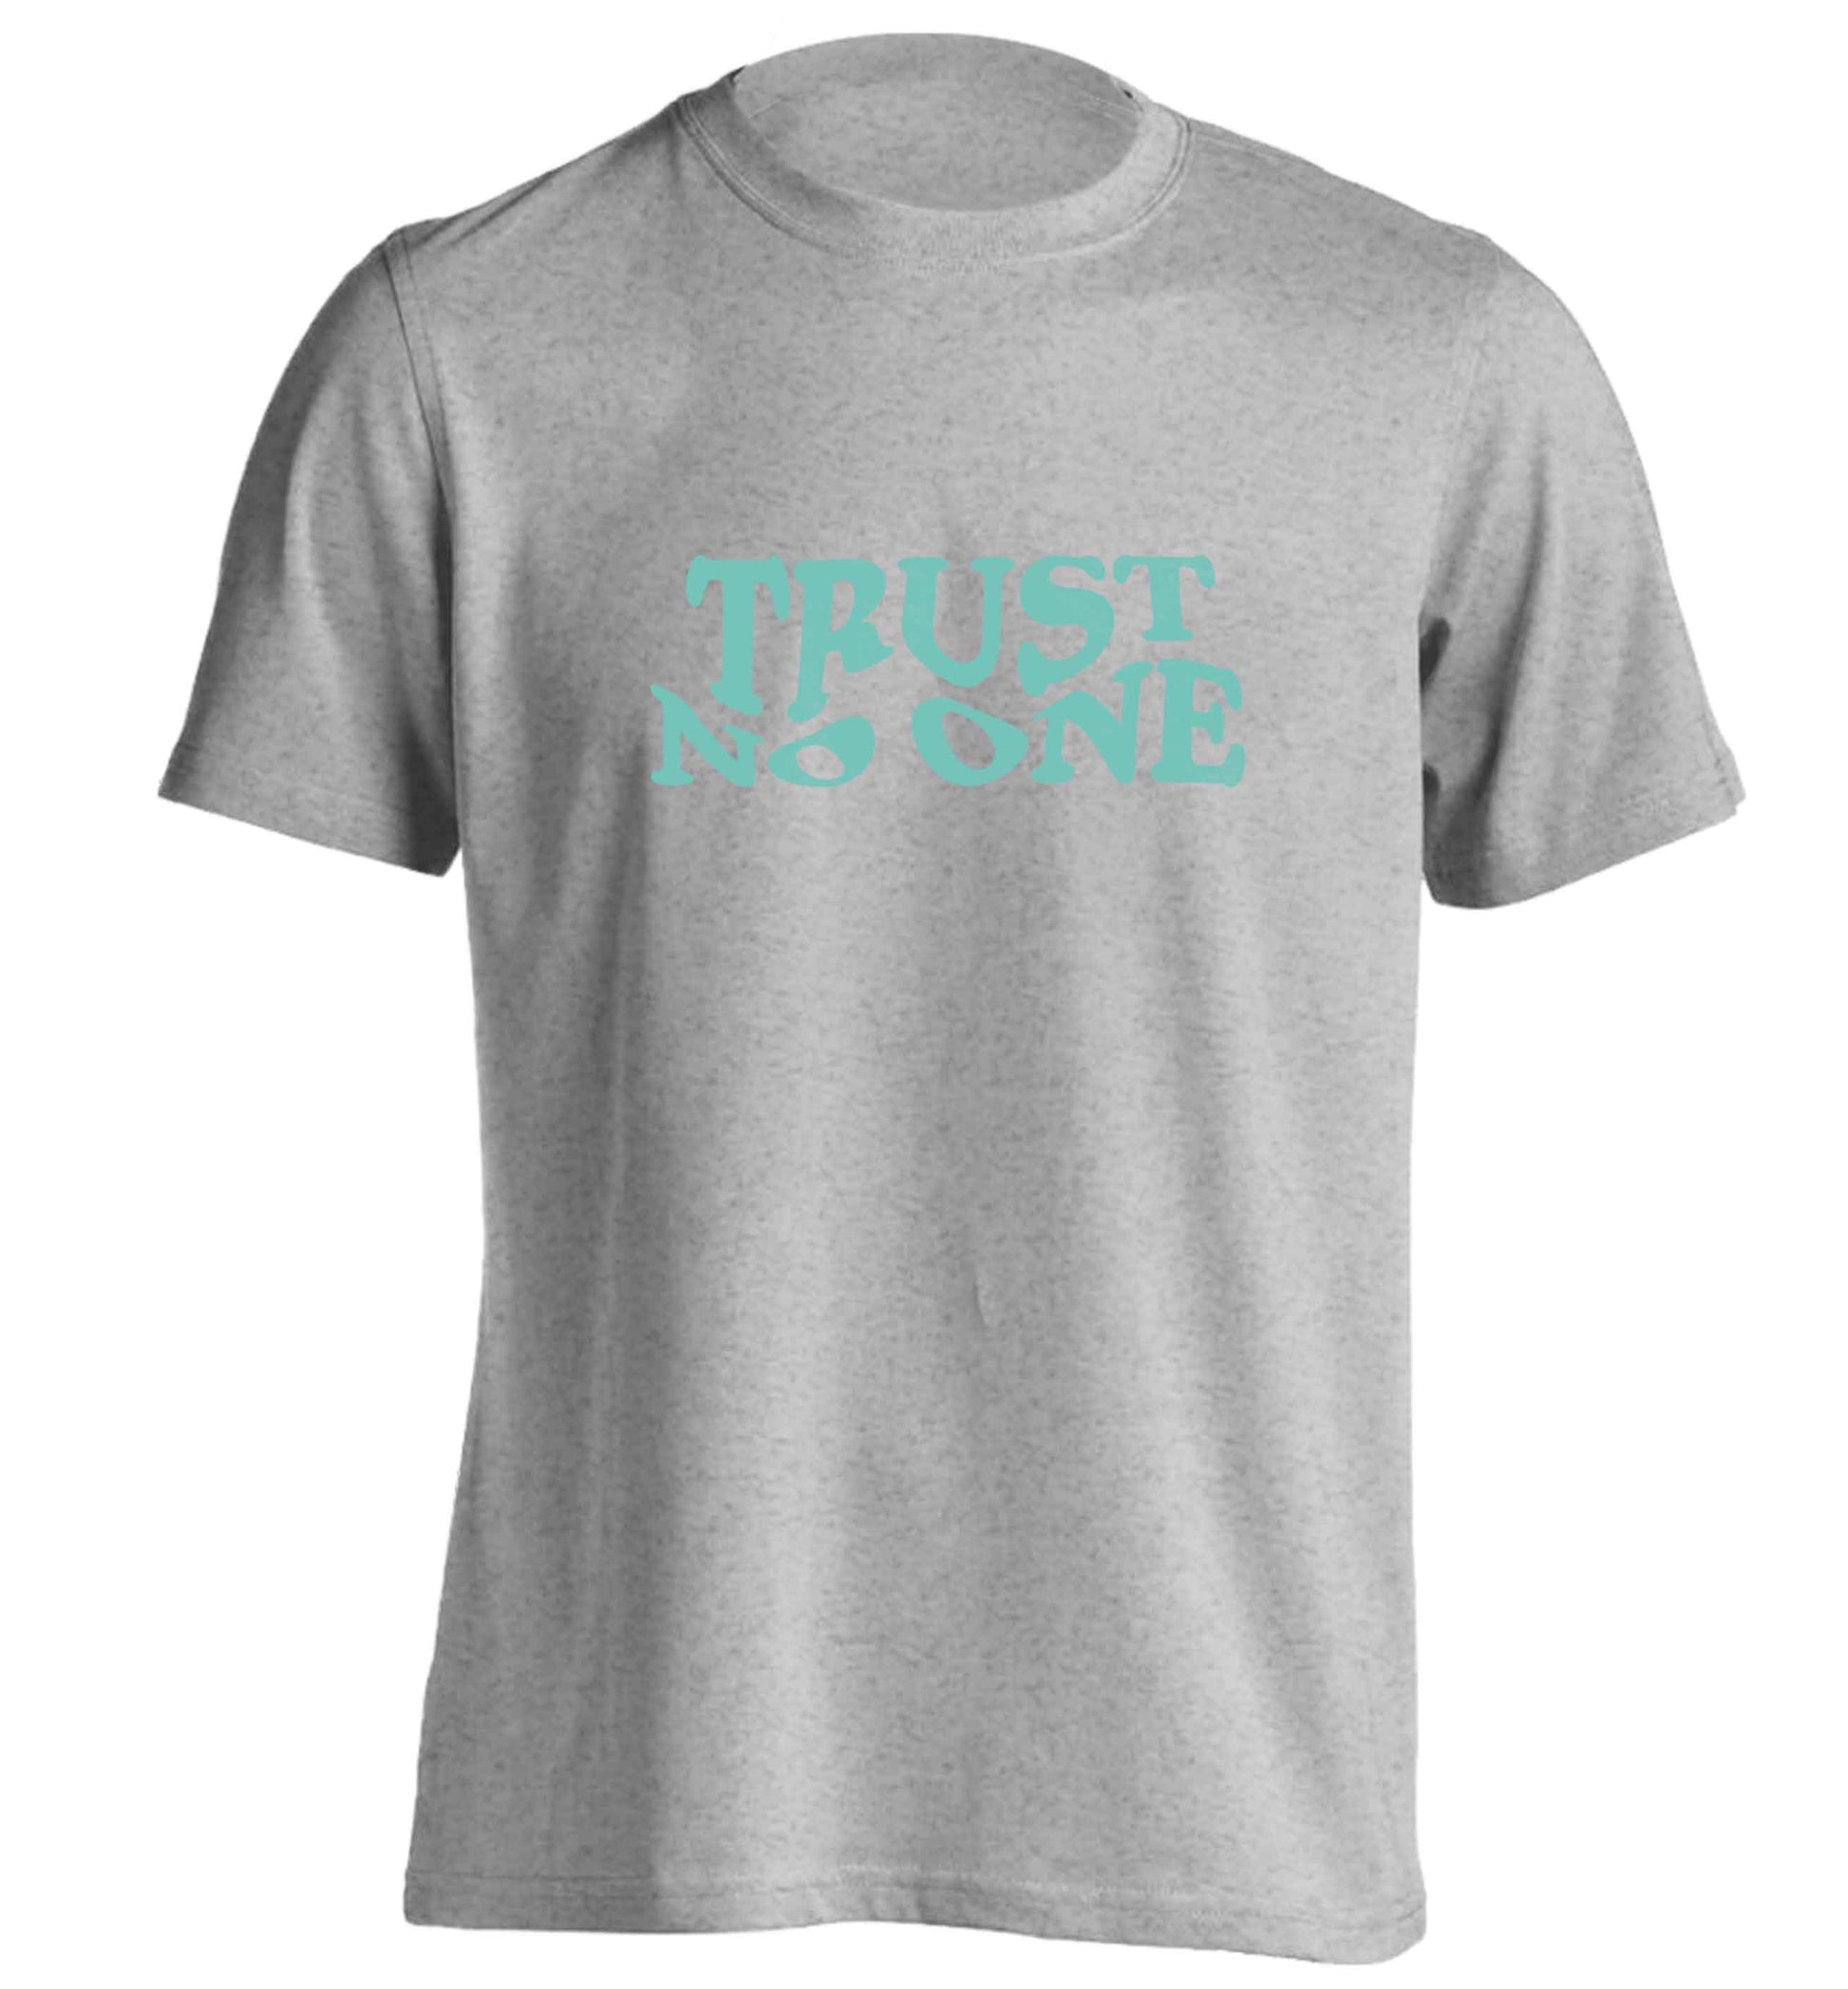 Trust no one adults unisex grey Tshirt 2XL